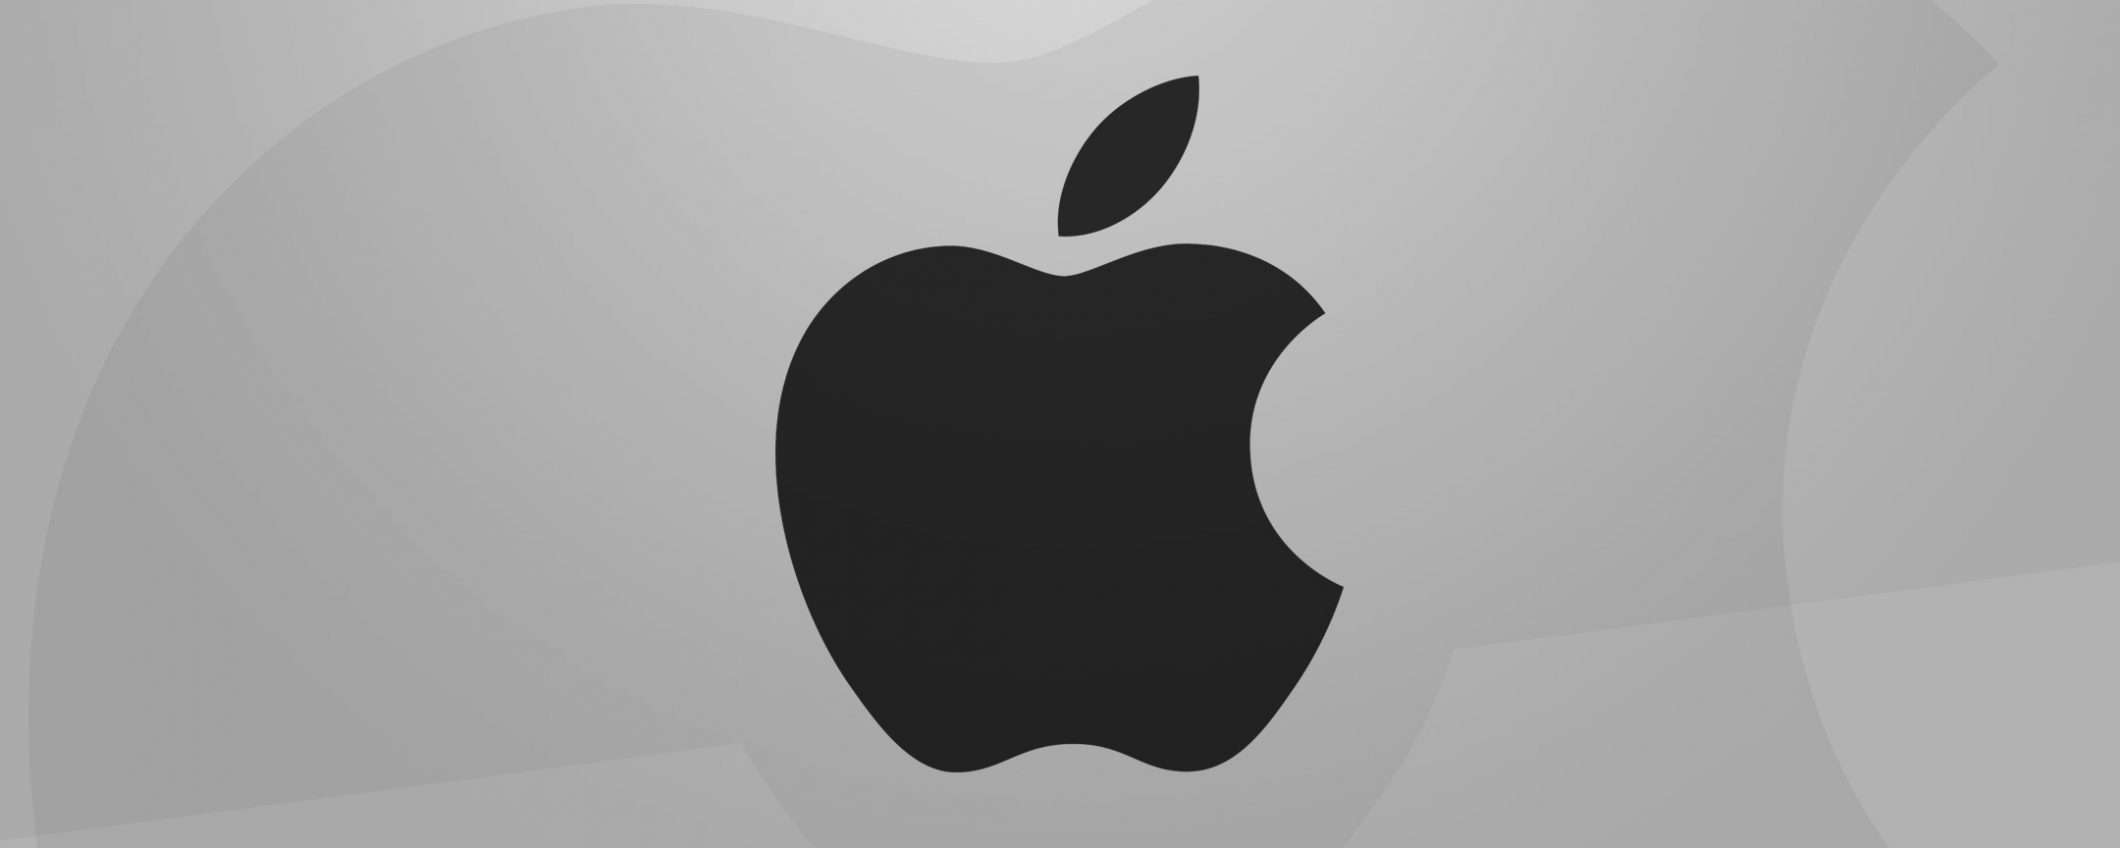 Project Titan: 190 licenziamenti per il team Apple